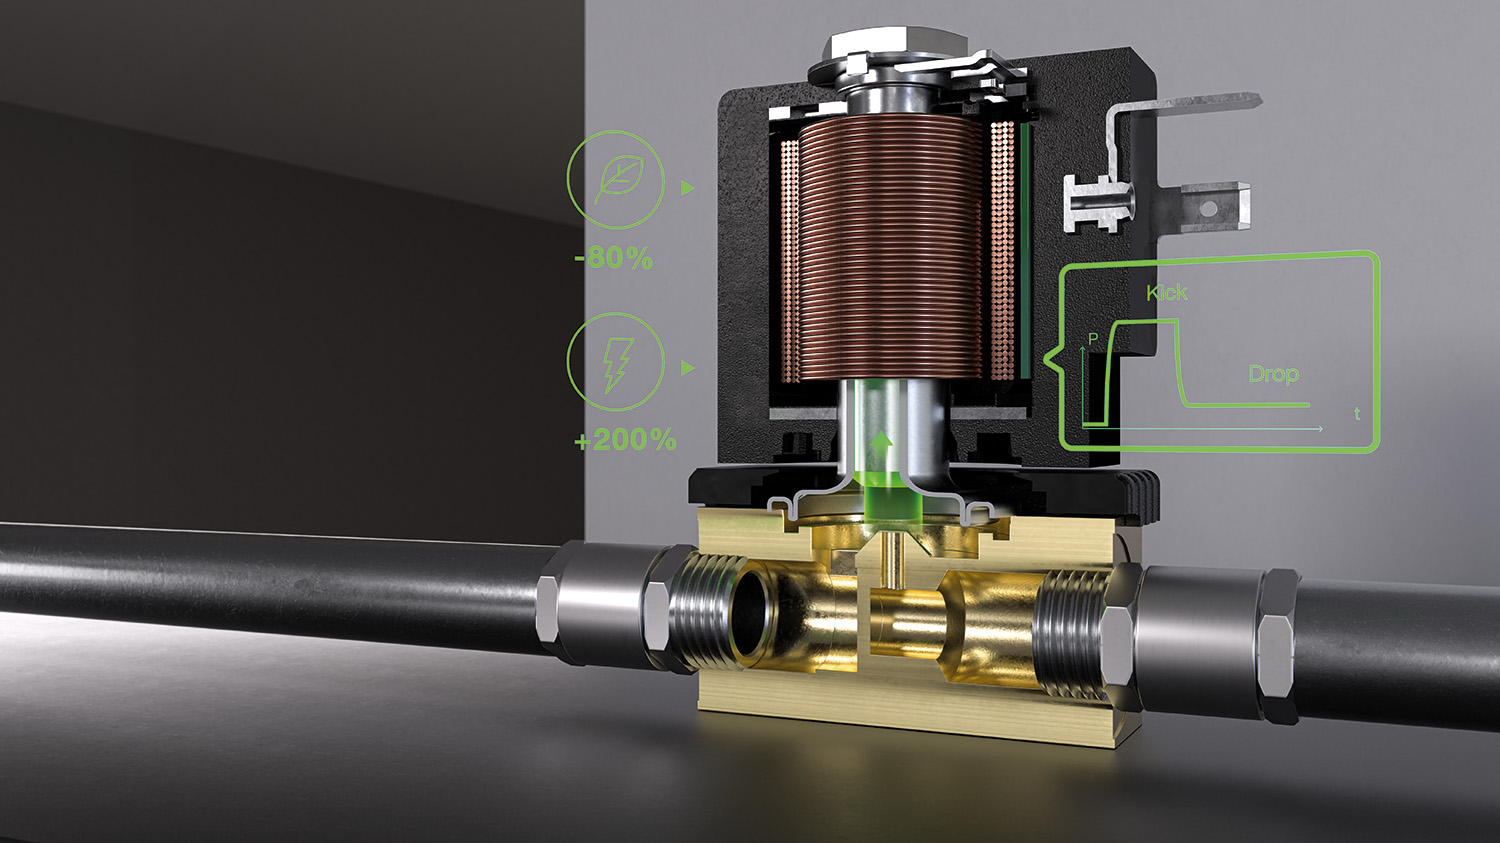 Coils increase solenoid valve energy efficiency by 80% - Engineer News ...